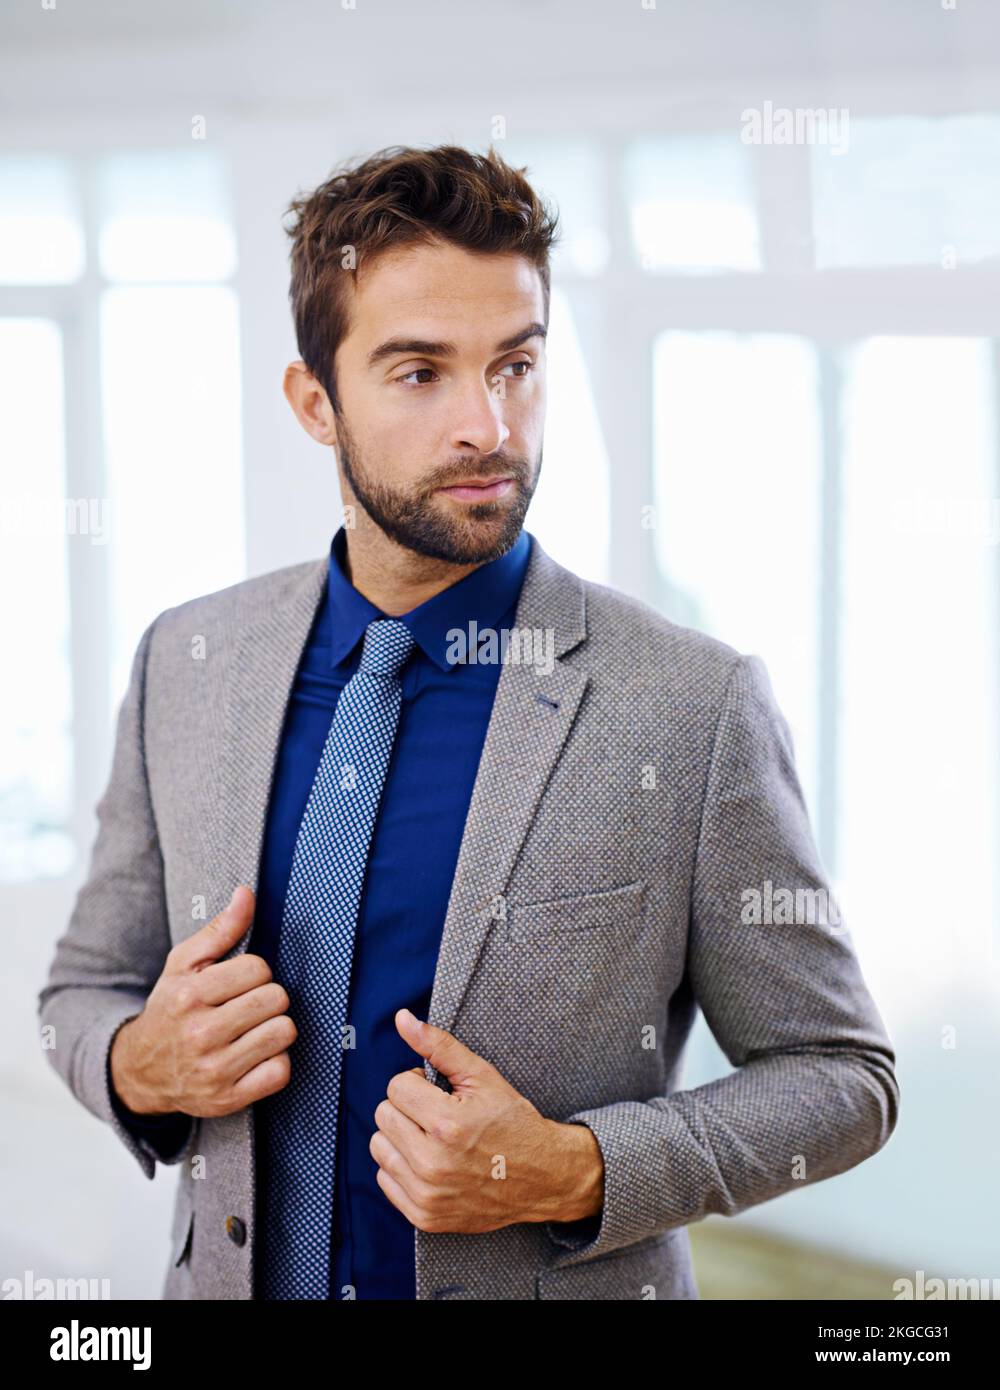 Elegante e professionale. Uomo con un abito contemporaneo che guarda lontano. Foto Stock